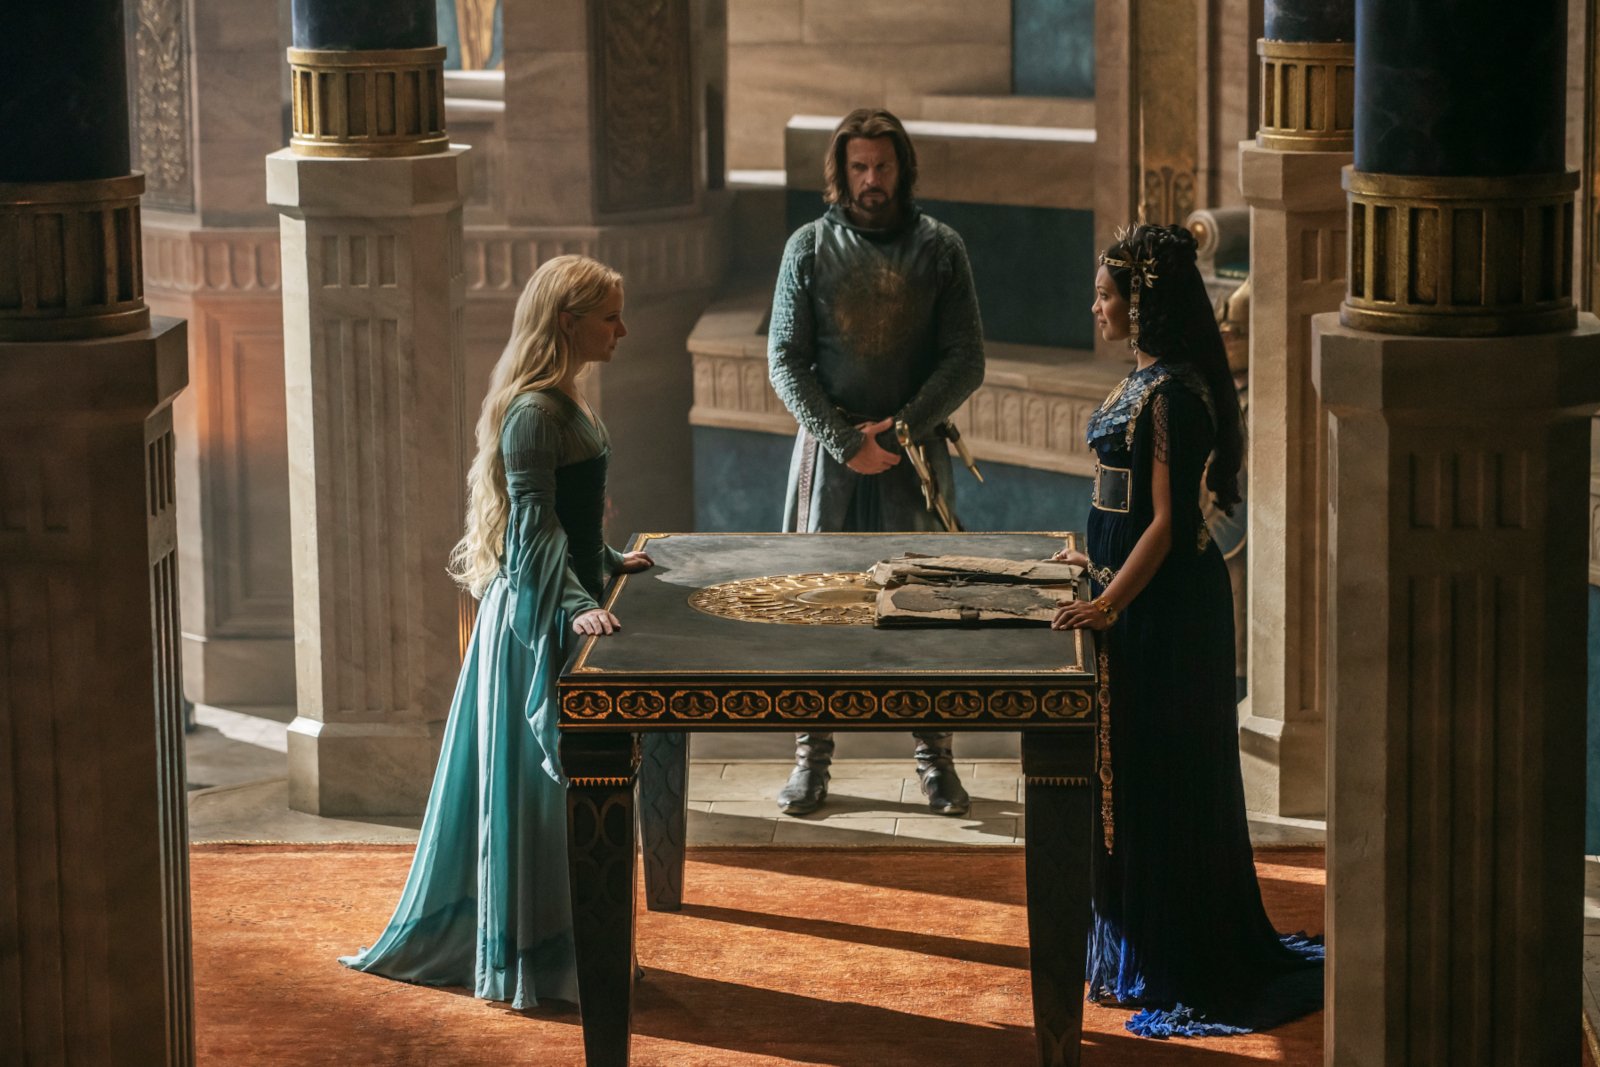 「The Rings of Power」エピソード 4 の Morfydd Clark (Galadriel)、Lloyd Owen (Elendil)、および Cynthia Addai-Robinson (Queen Regent Míriel)。彼らはテーブルの周りに立っています。